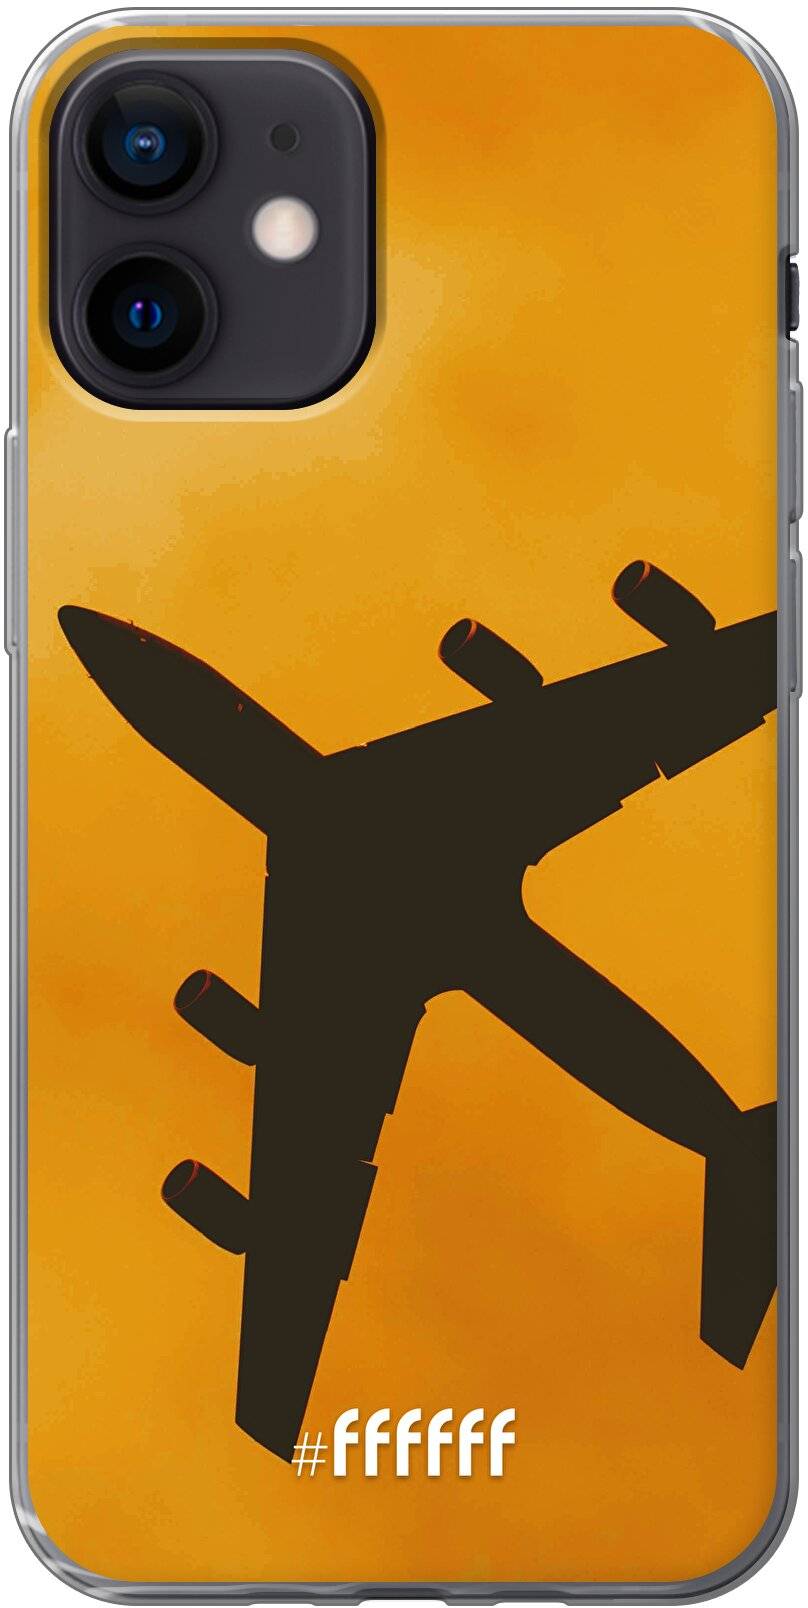 Aeroplane iPhone 12 Mini